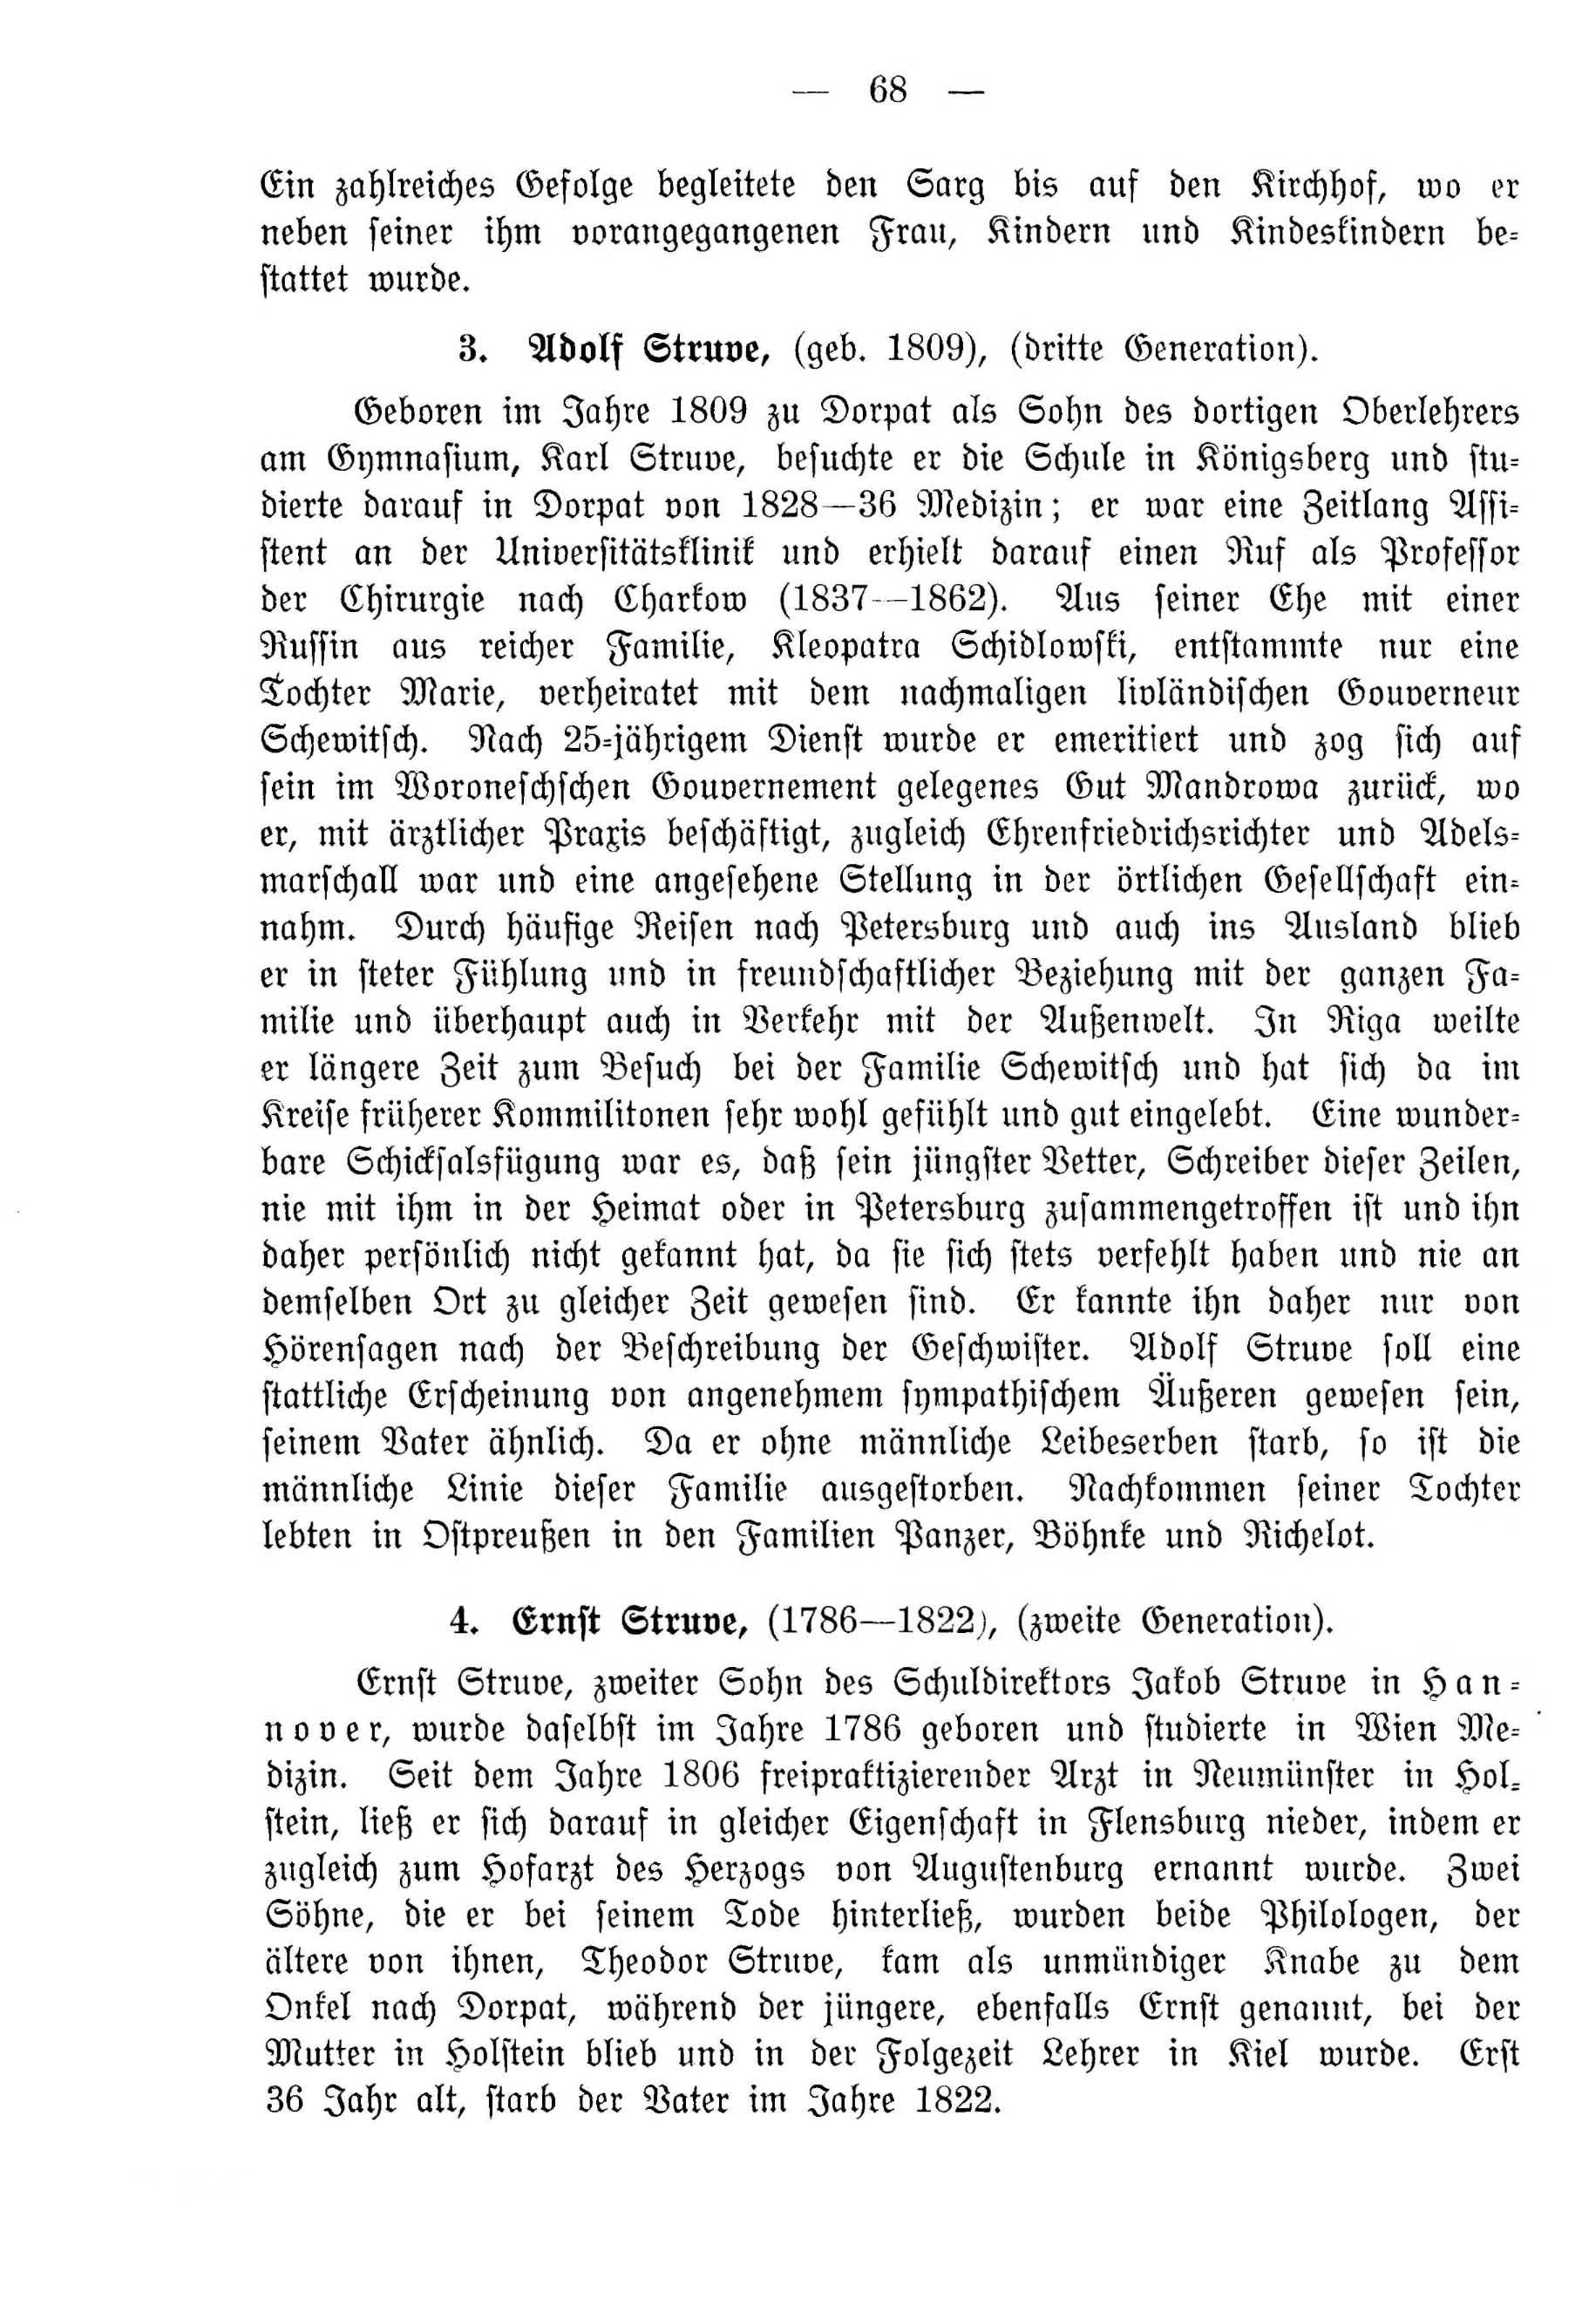 Deutsche Monatsschrift für Russland [4] (1915) | 68. (68) Main body of text